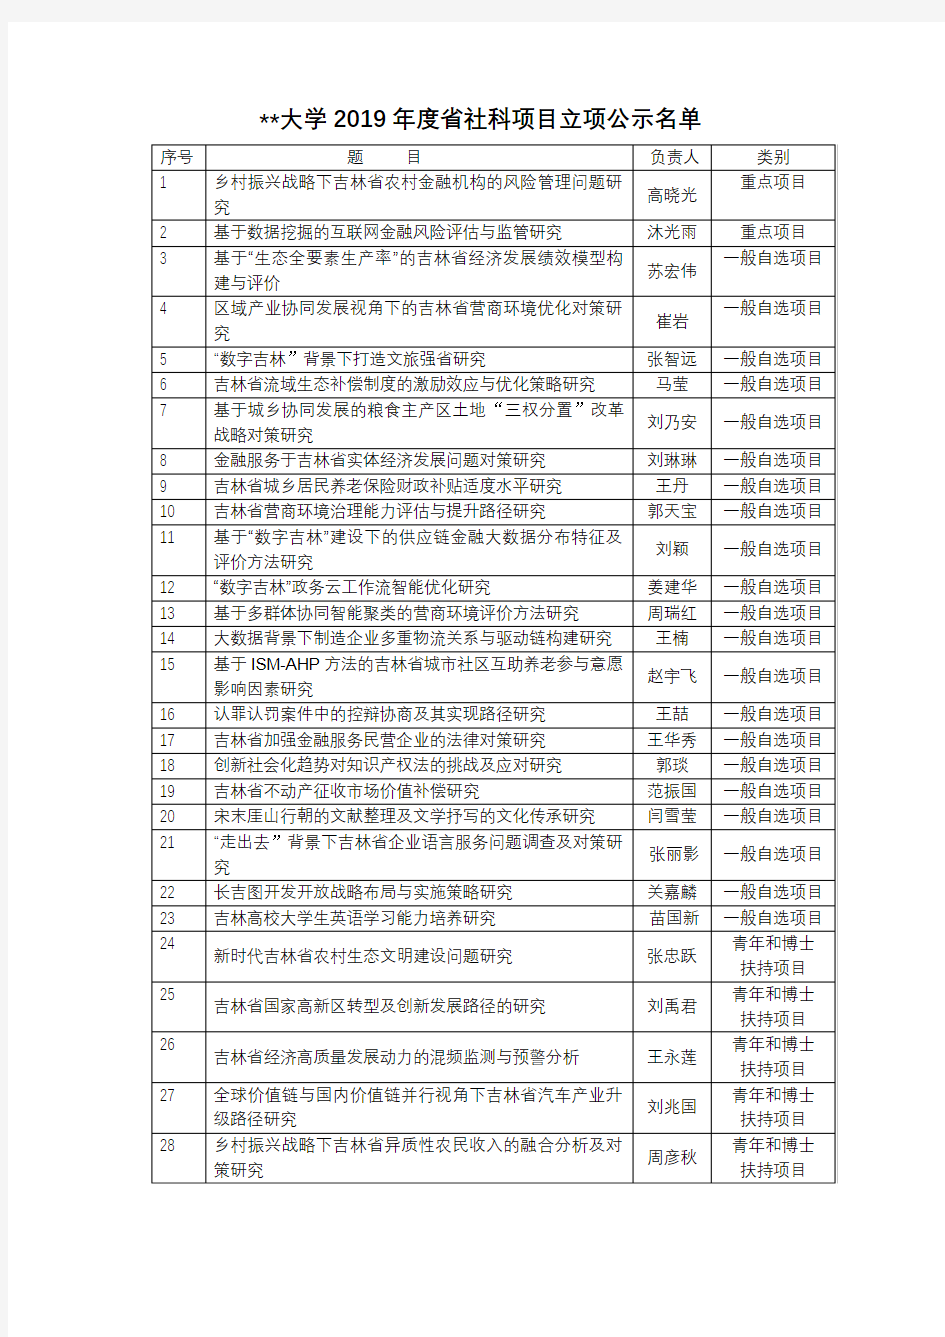 吉林财经大学2019年度省社科项目立项公示名单【模板】